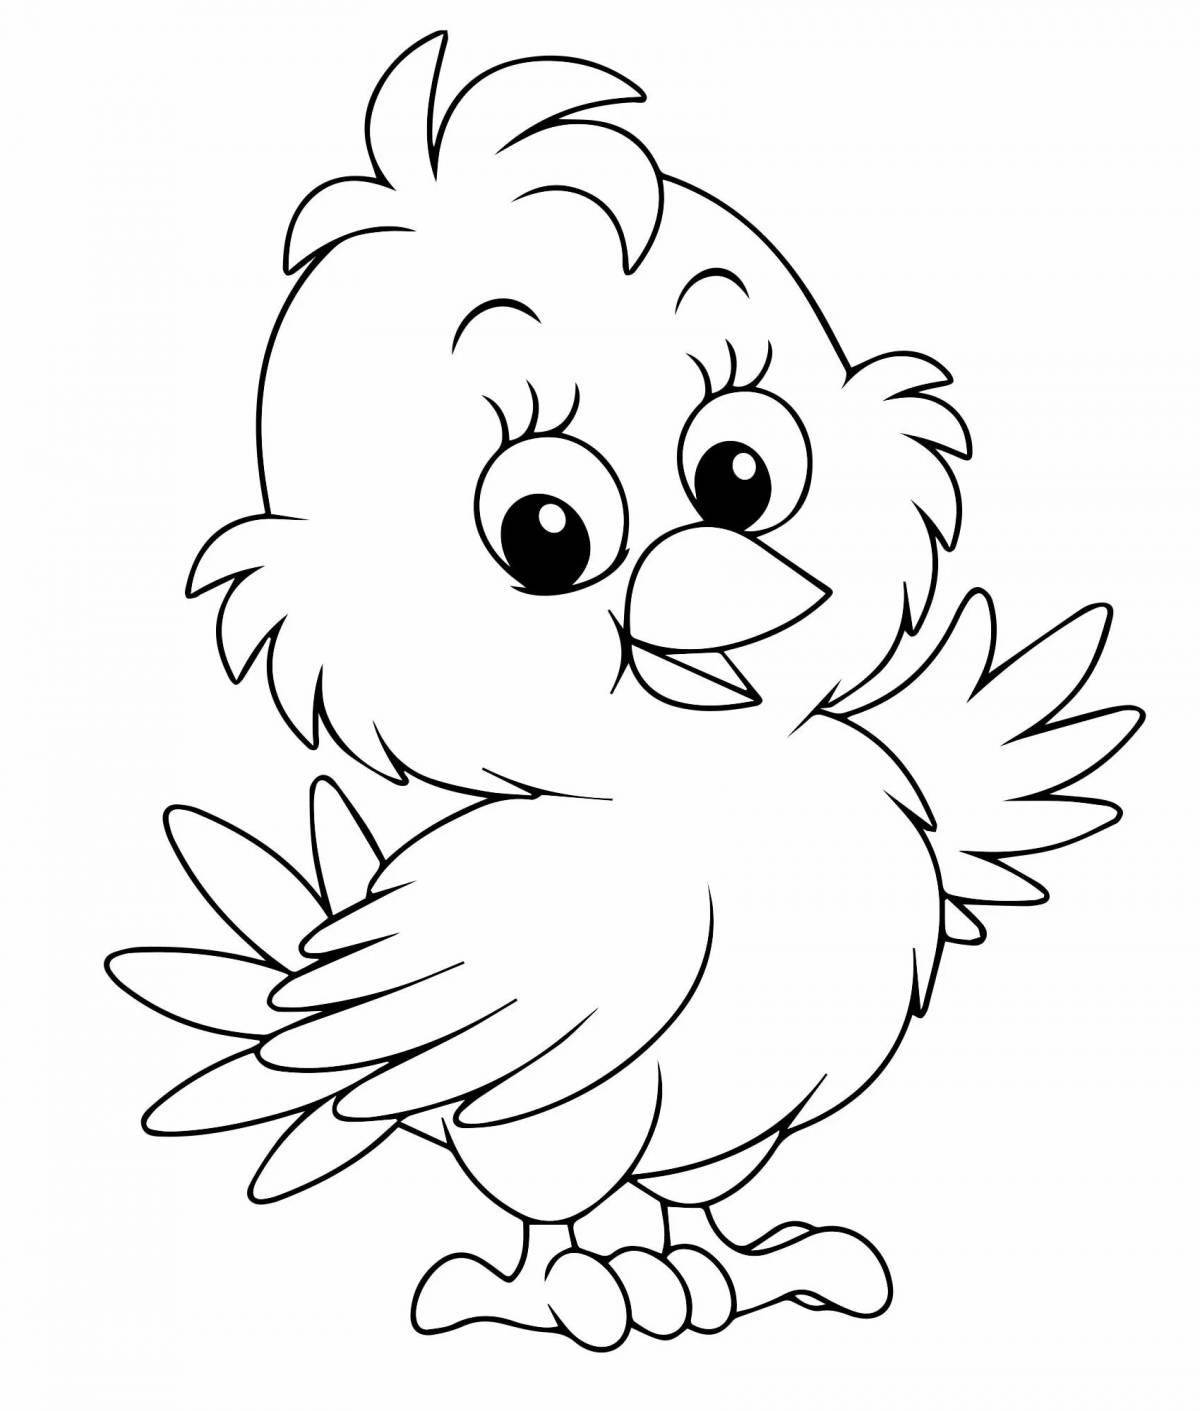 Сладкий рисунок цыпленка для детей